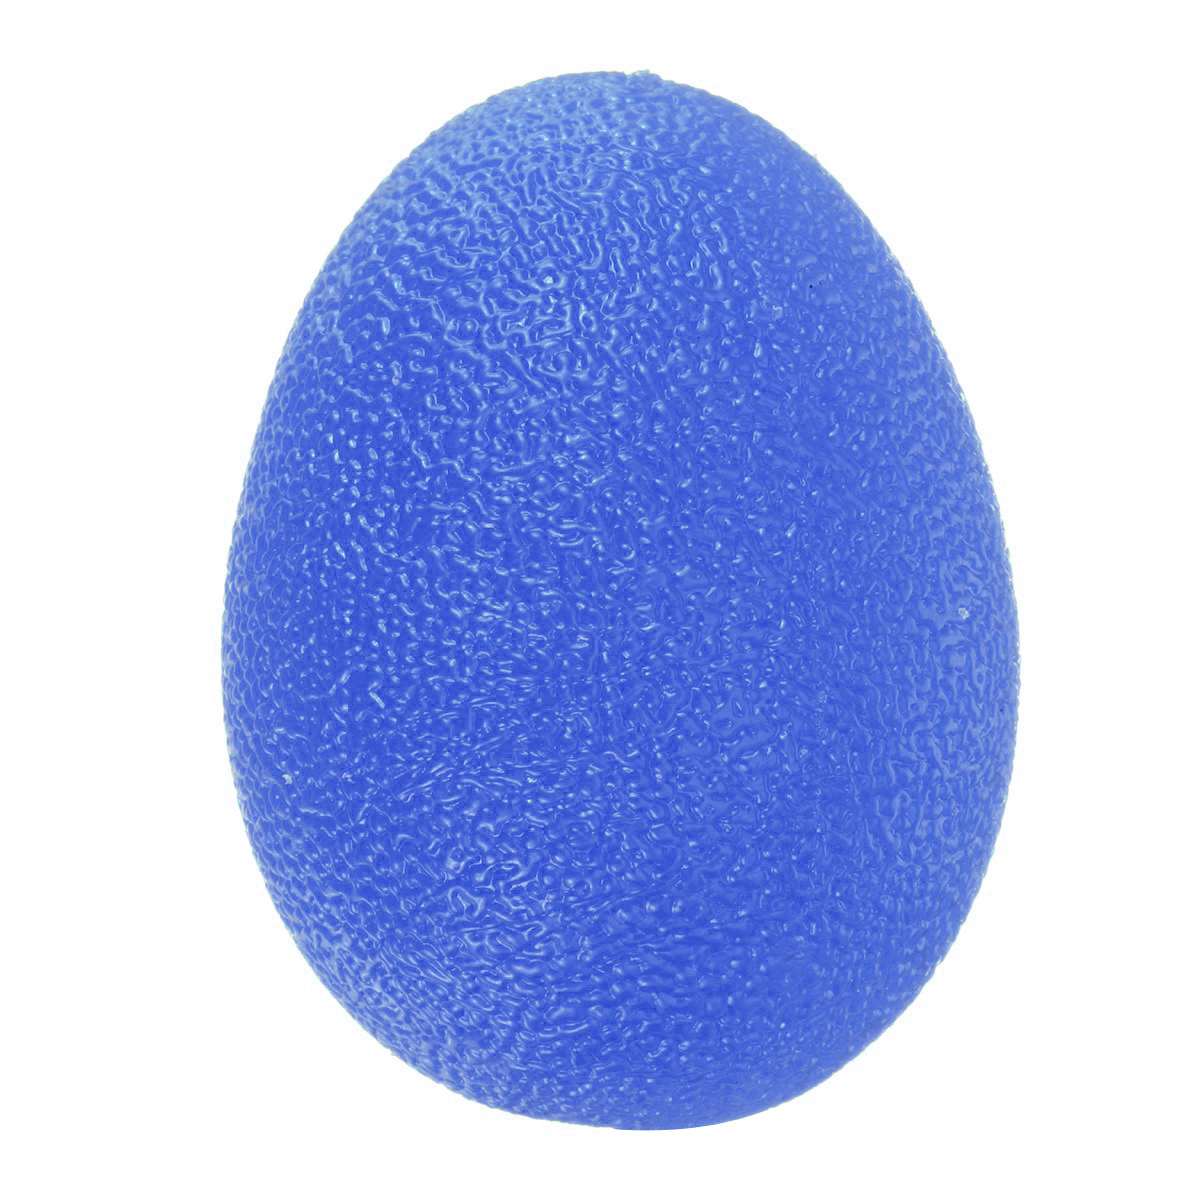 1 stk 58mm ægform stresskugler håndterapi træning klemme kugler stress relief greb forstærker bolde muskeltræning: Blå